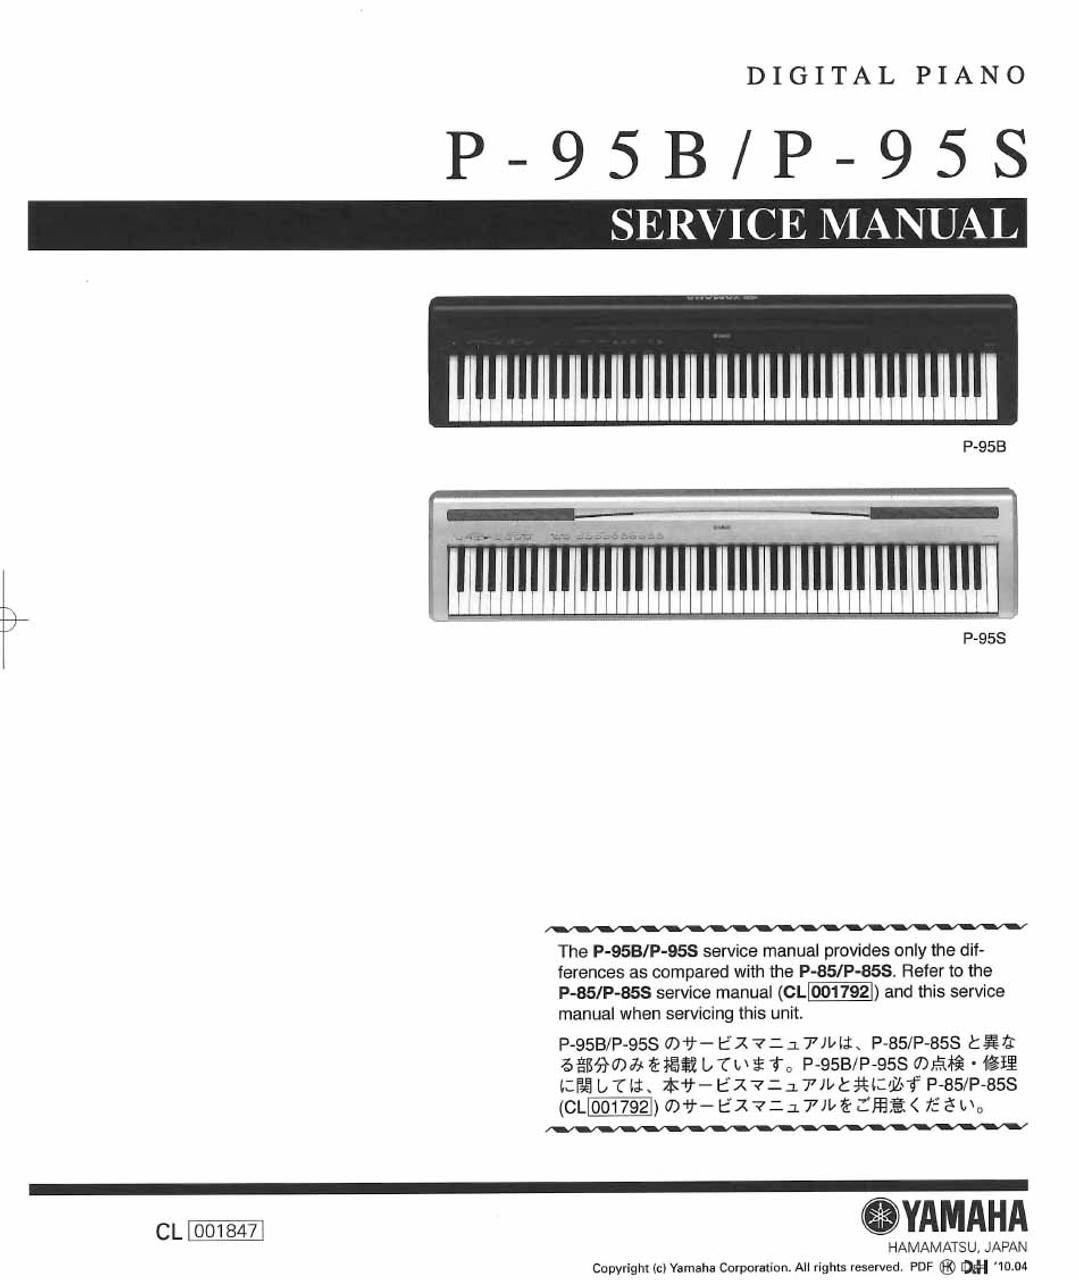 Yamaha P-95 Service Manual